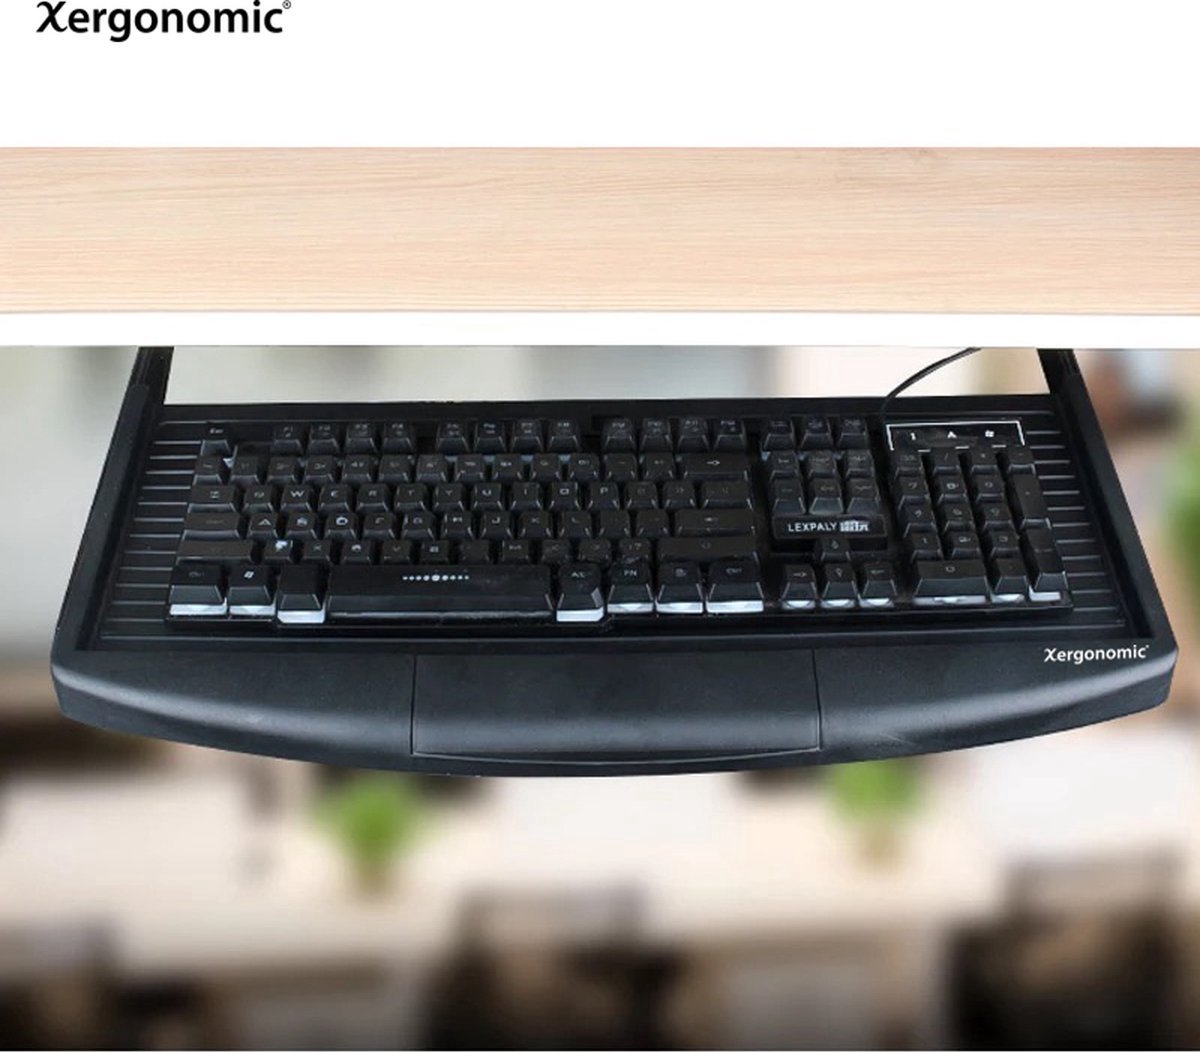 Xergonomic toetsenbordlade – Toetsenbord houder – Ideaal voor kleinere bureaus – Uitschuifbare toetsenbordlade – 26 x 55 x 3.3 cm – Zwart